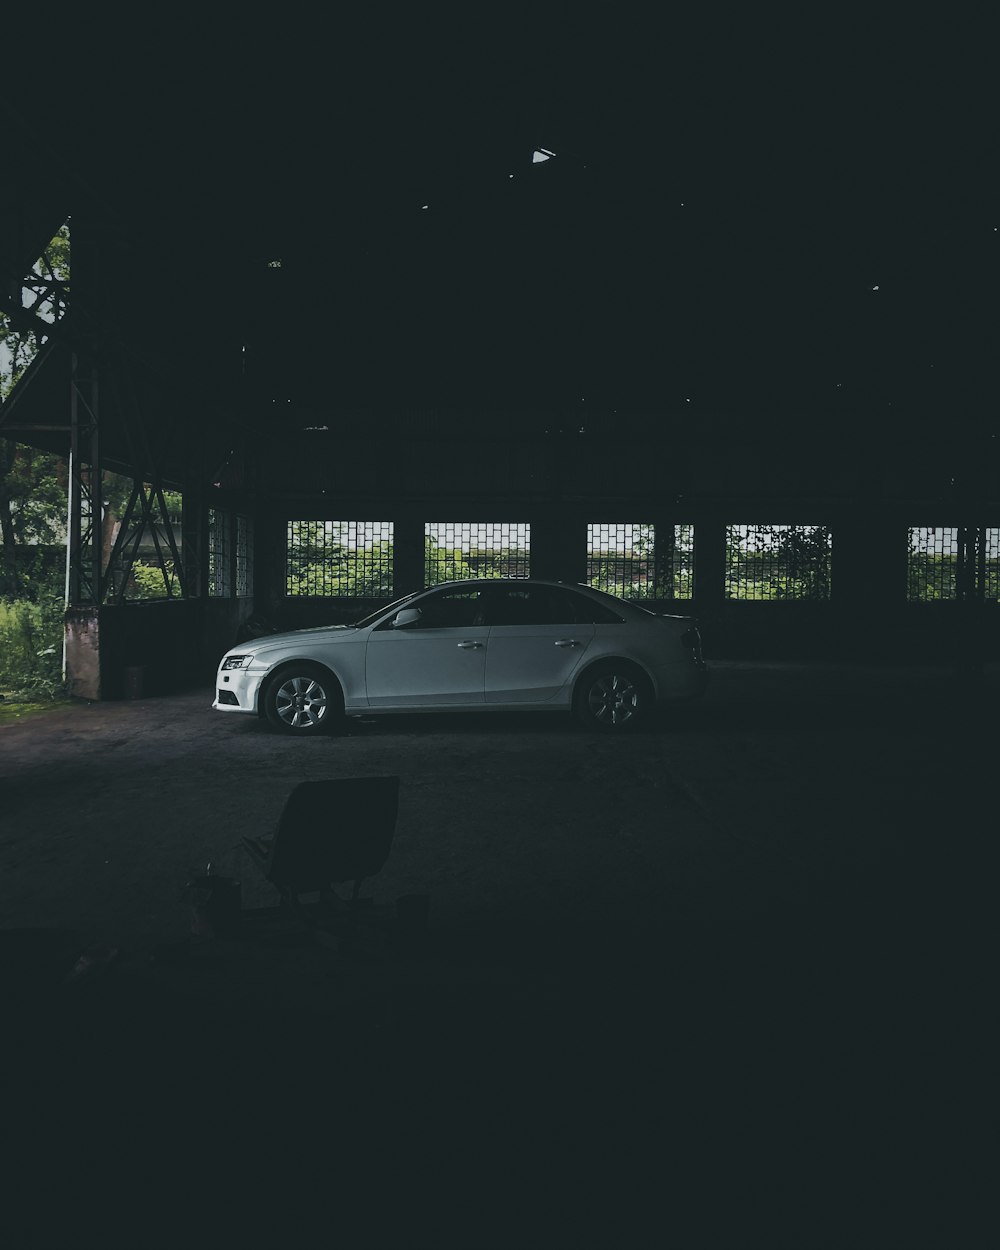 a car is parked in a dark garage